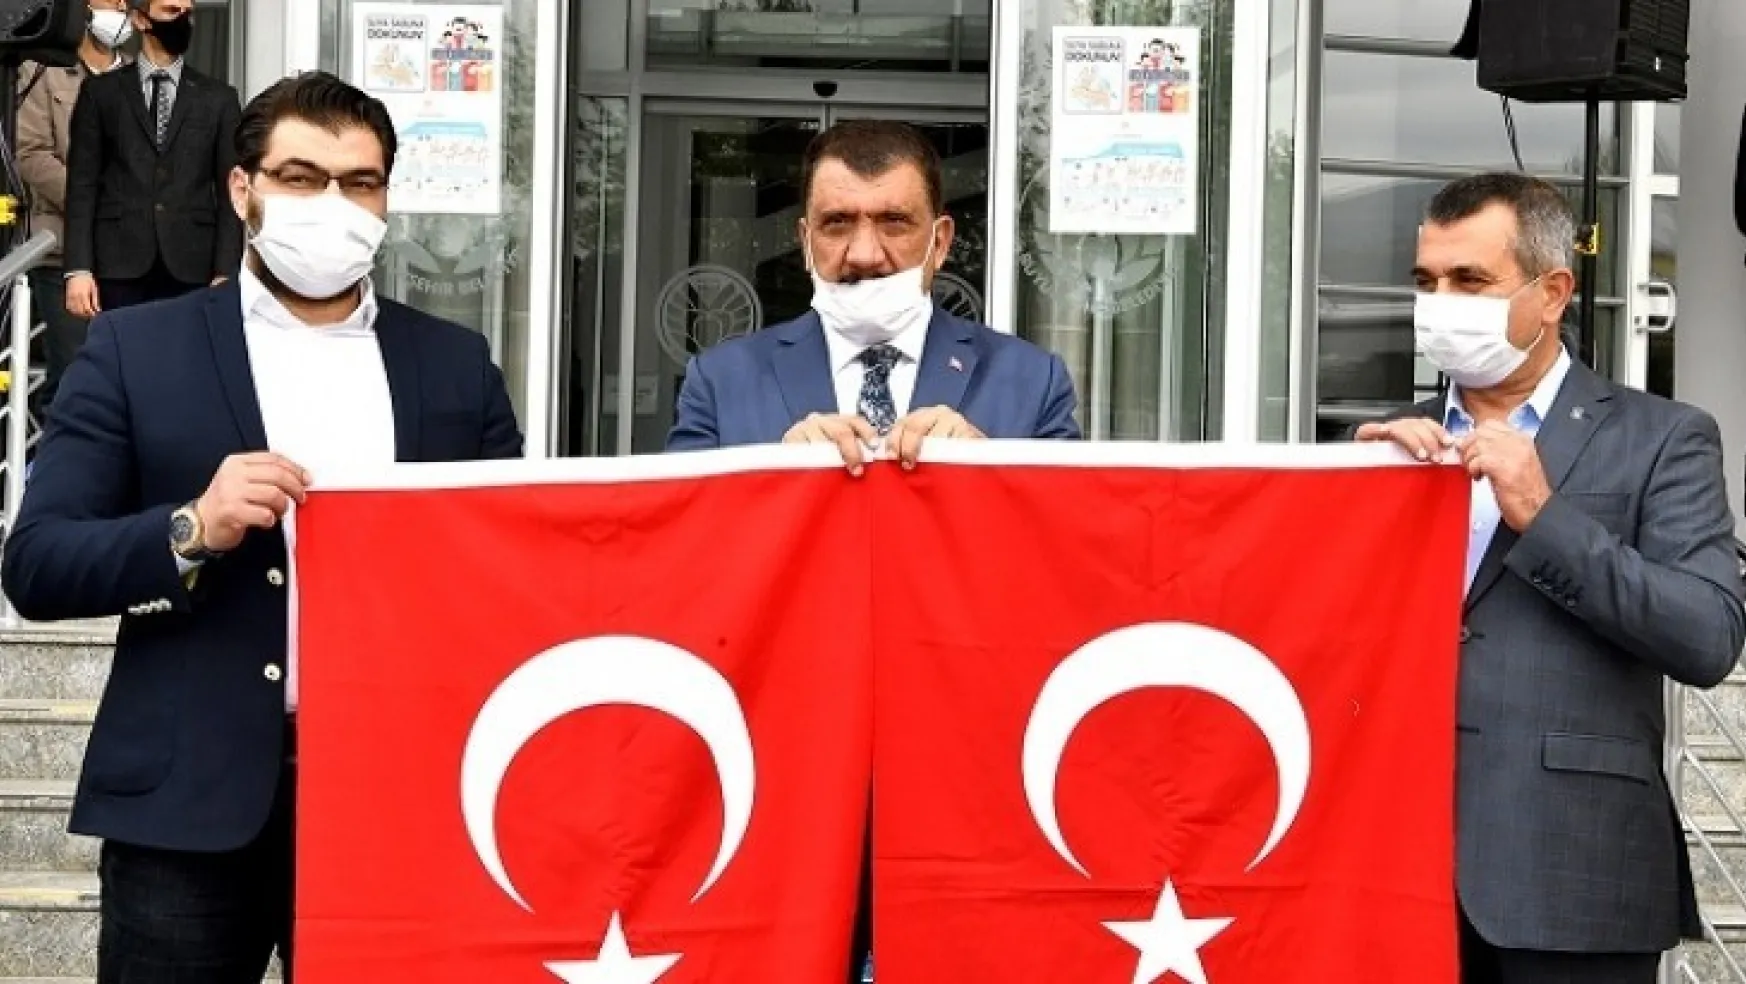 Büyükşehir Belediyesi Malatya'yı Bayraklarla Donattı